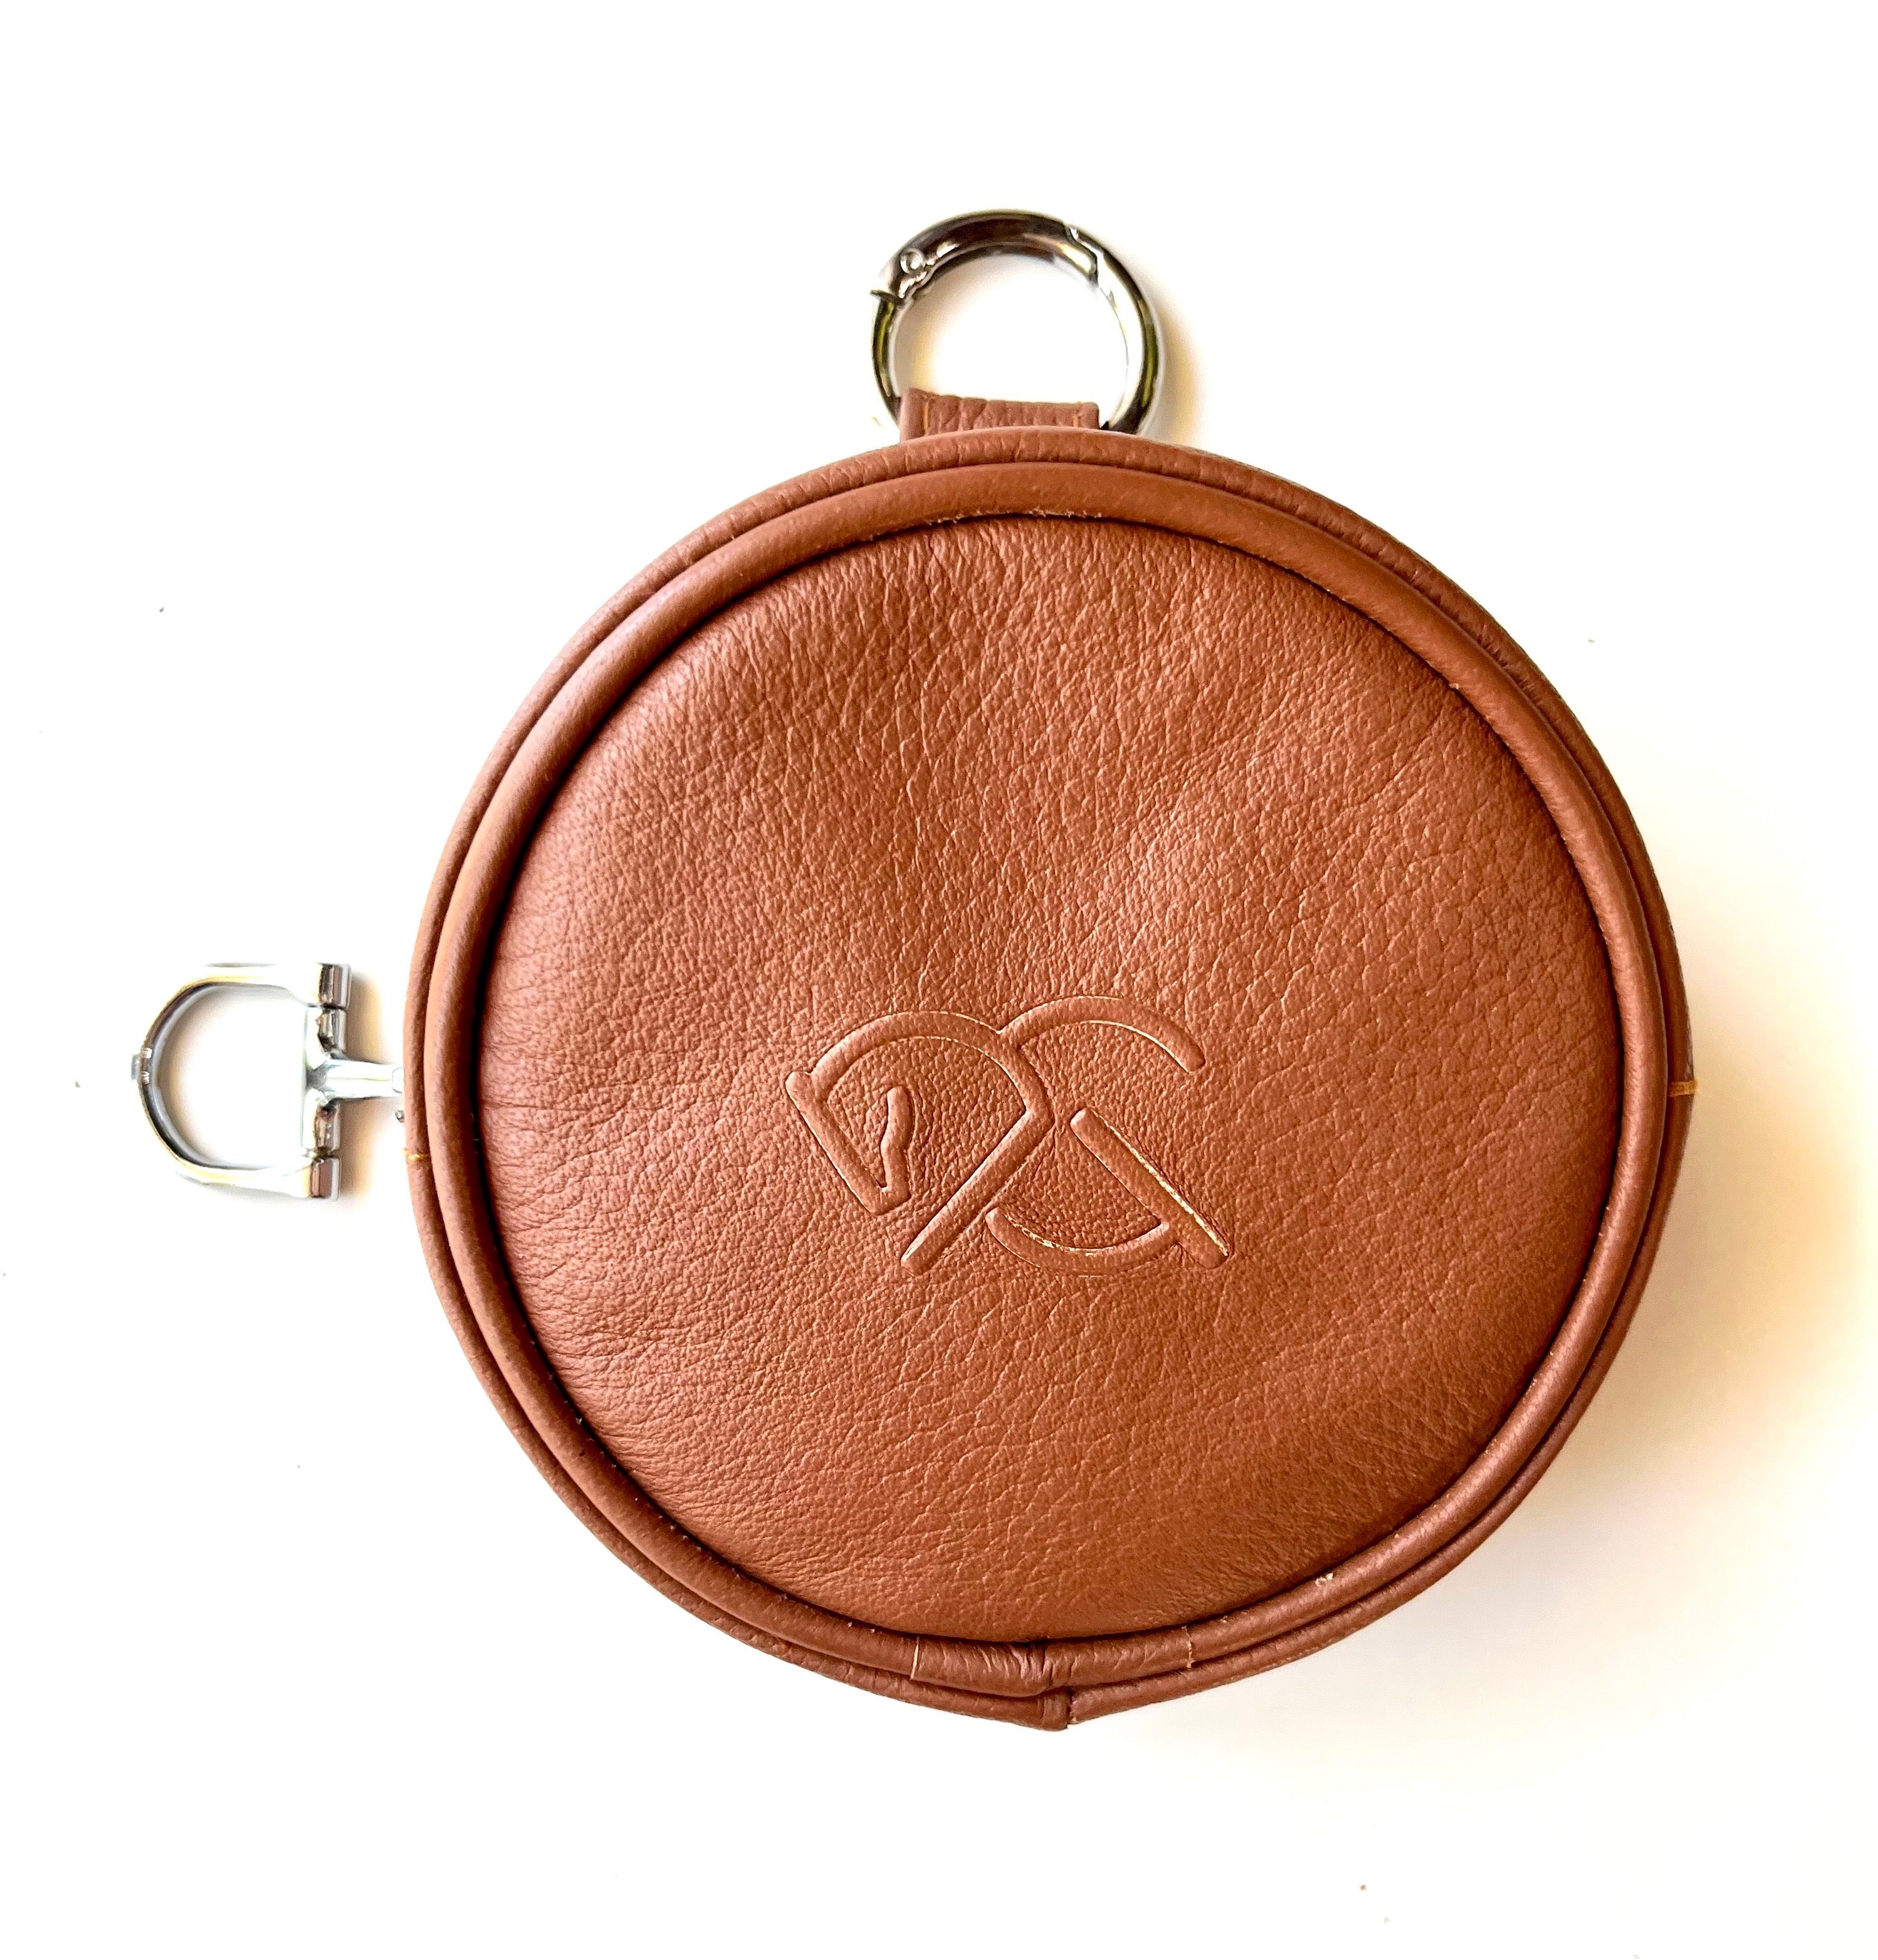 BLAISE ZIP POUCH - brown - Treat pouch, party pouch - belt bag - mini shoulder bag - coin pouch - AtelierCG™